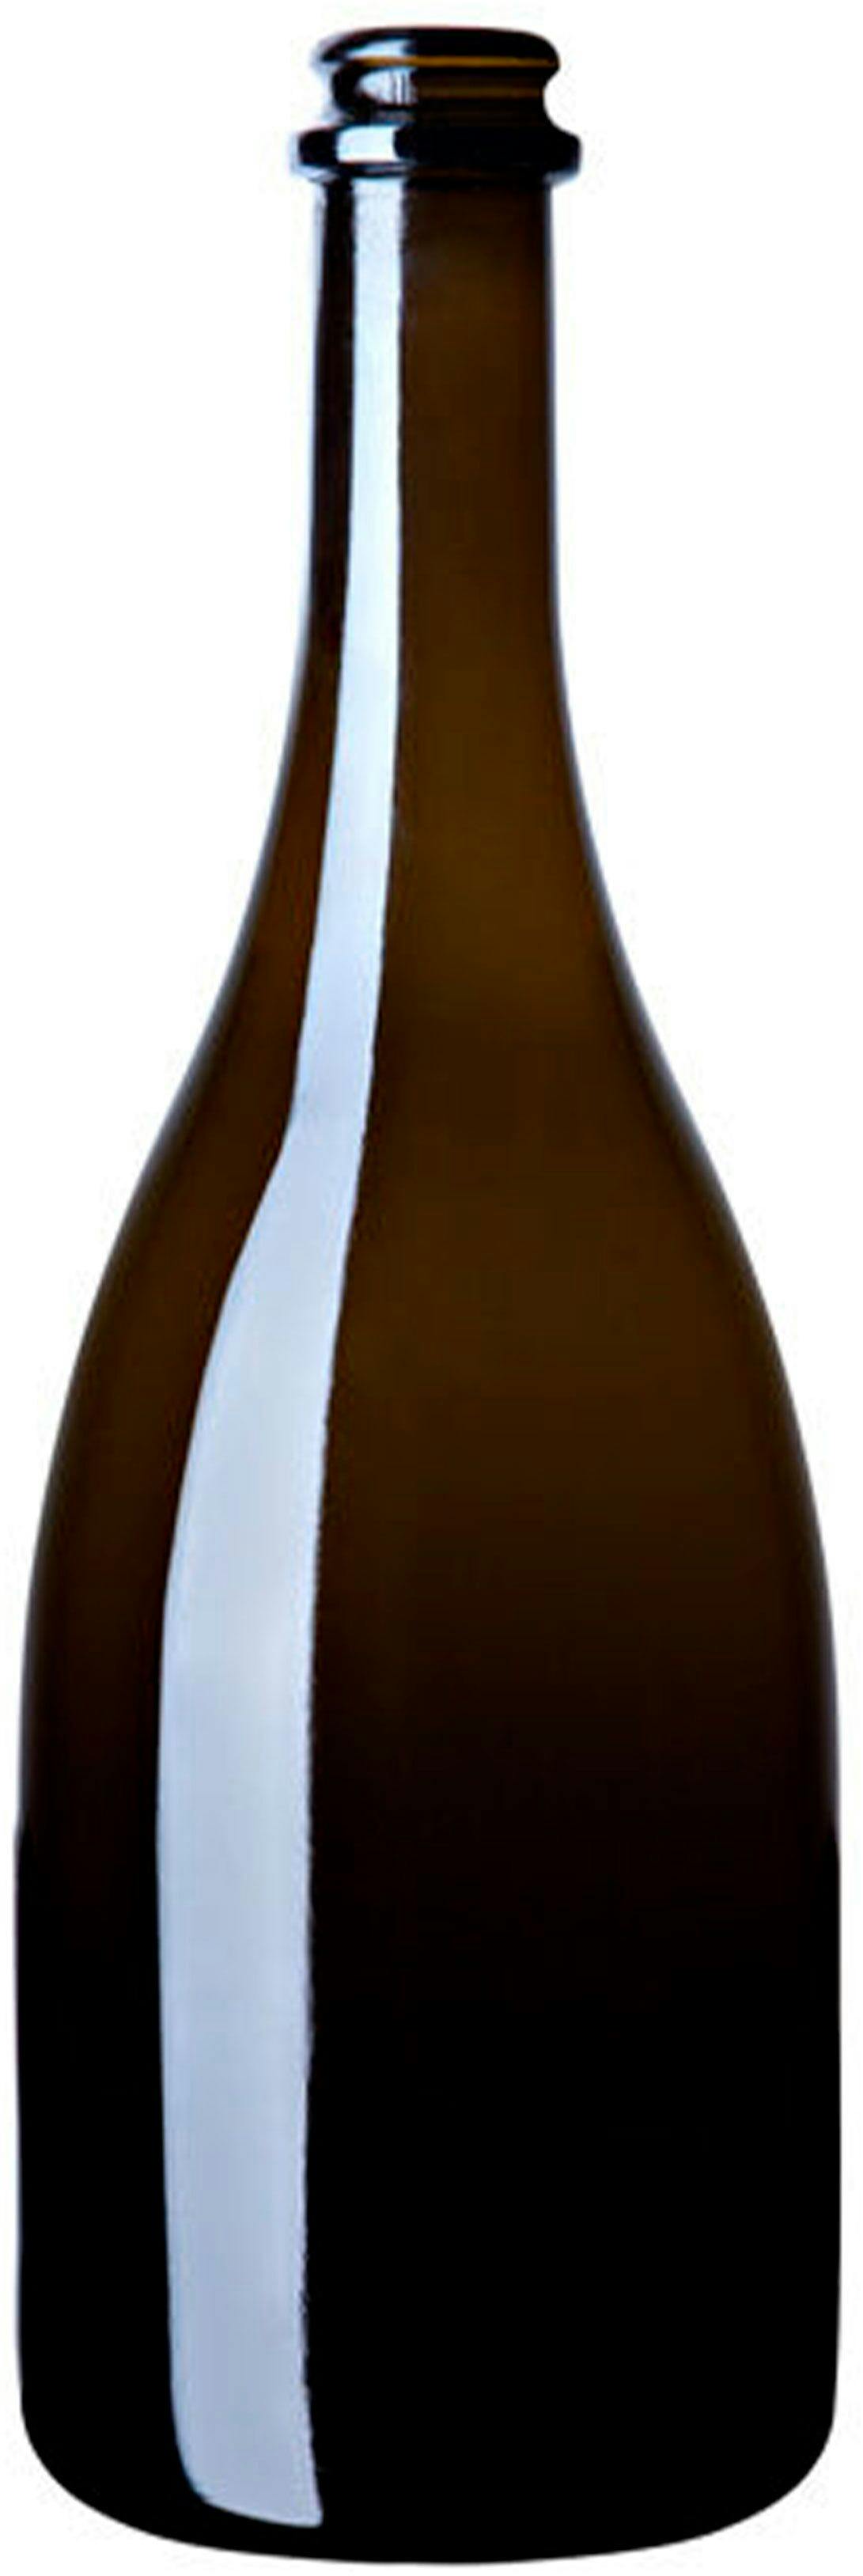 Bottle SPUM OTELLO 750 TC VA